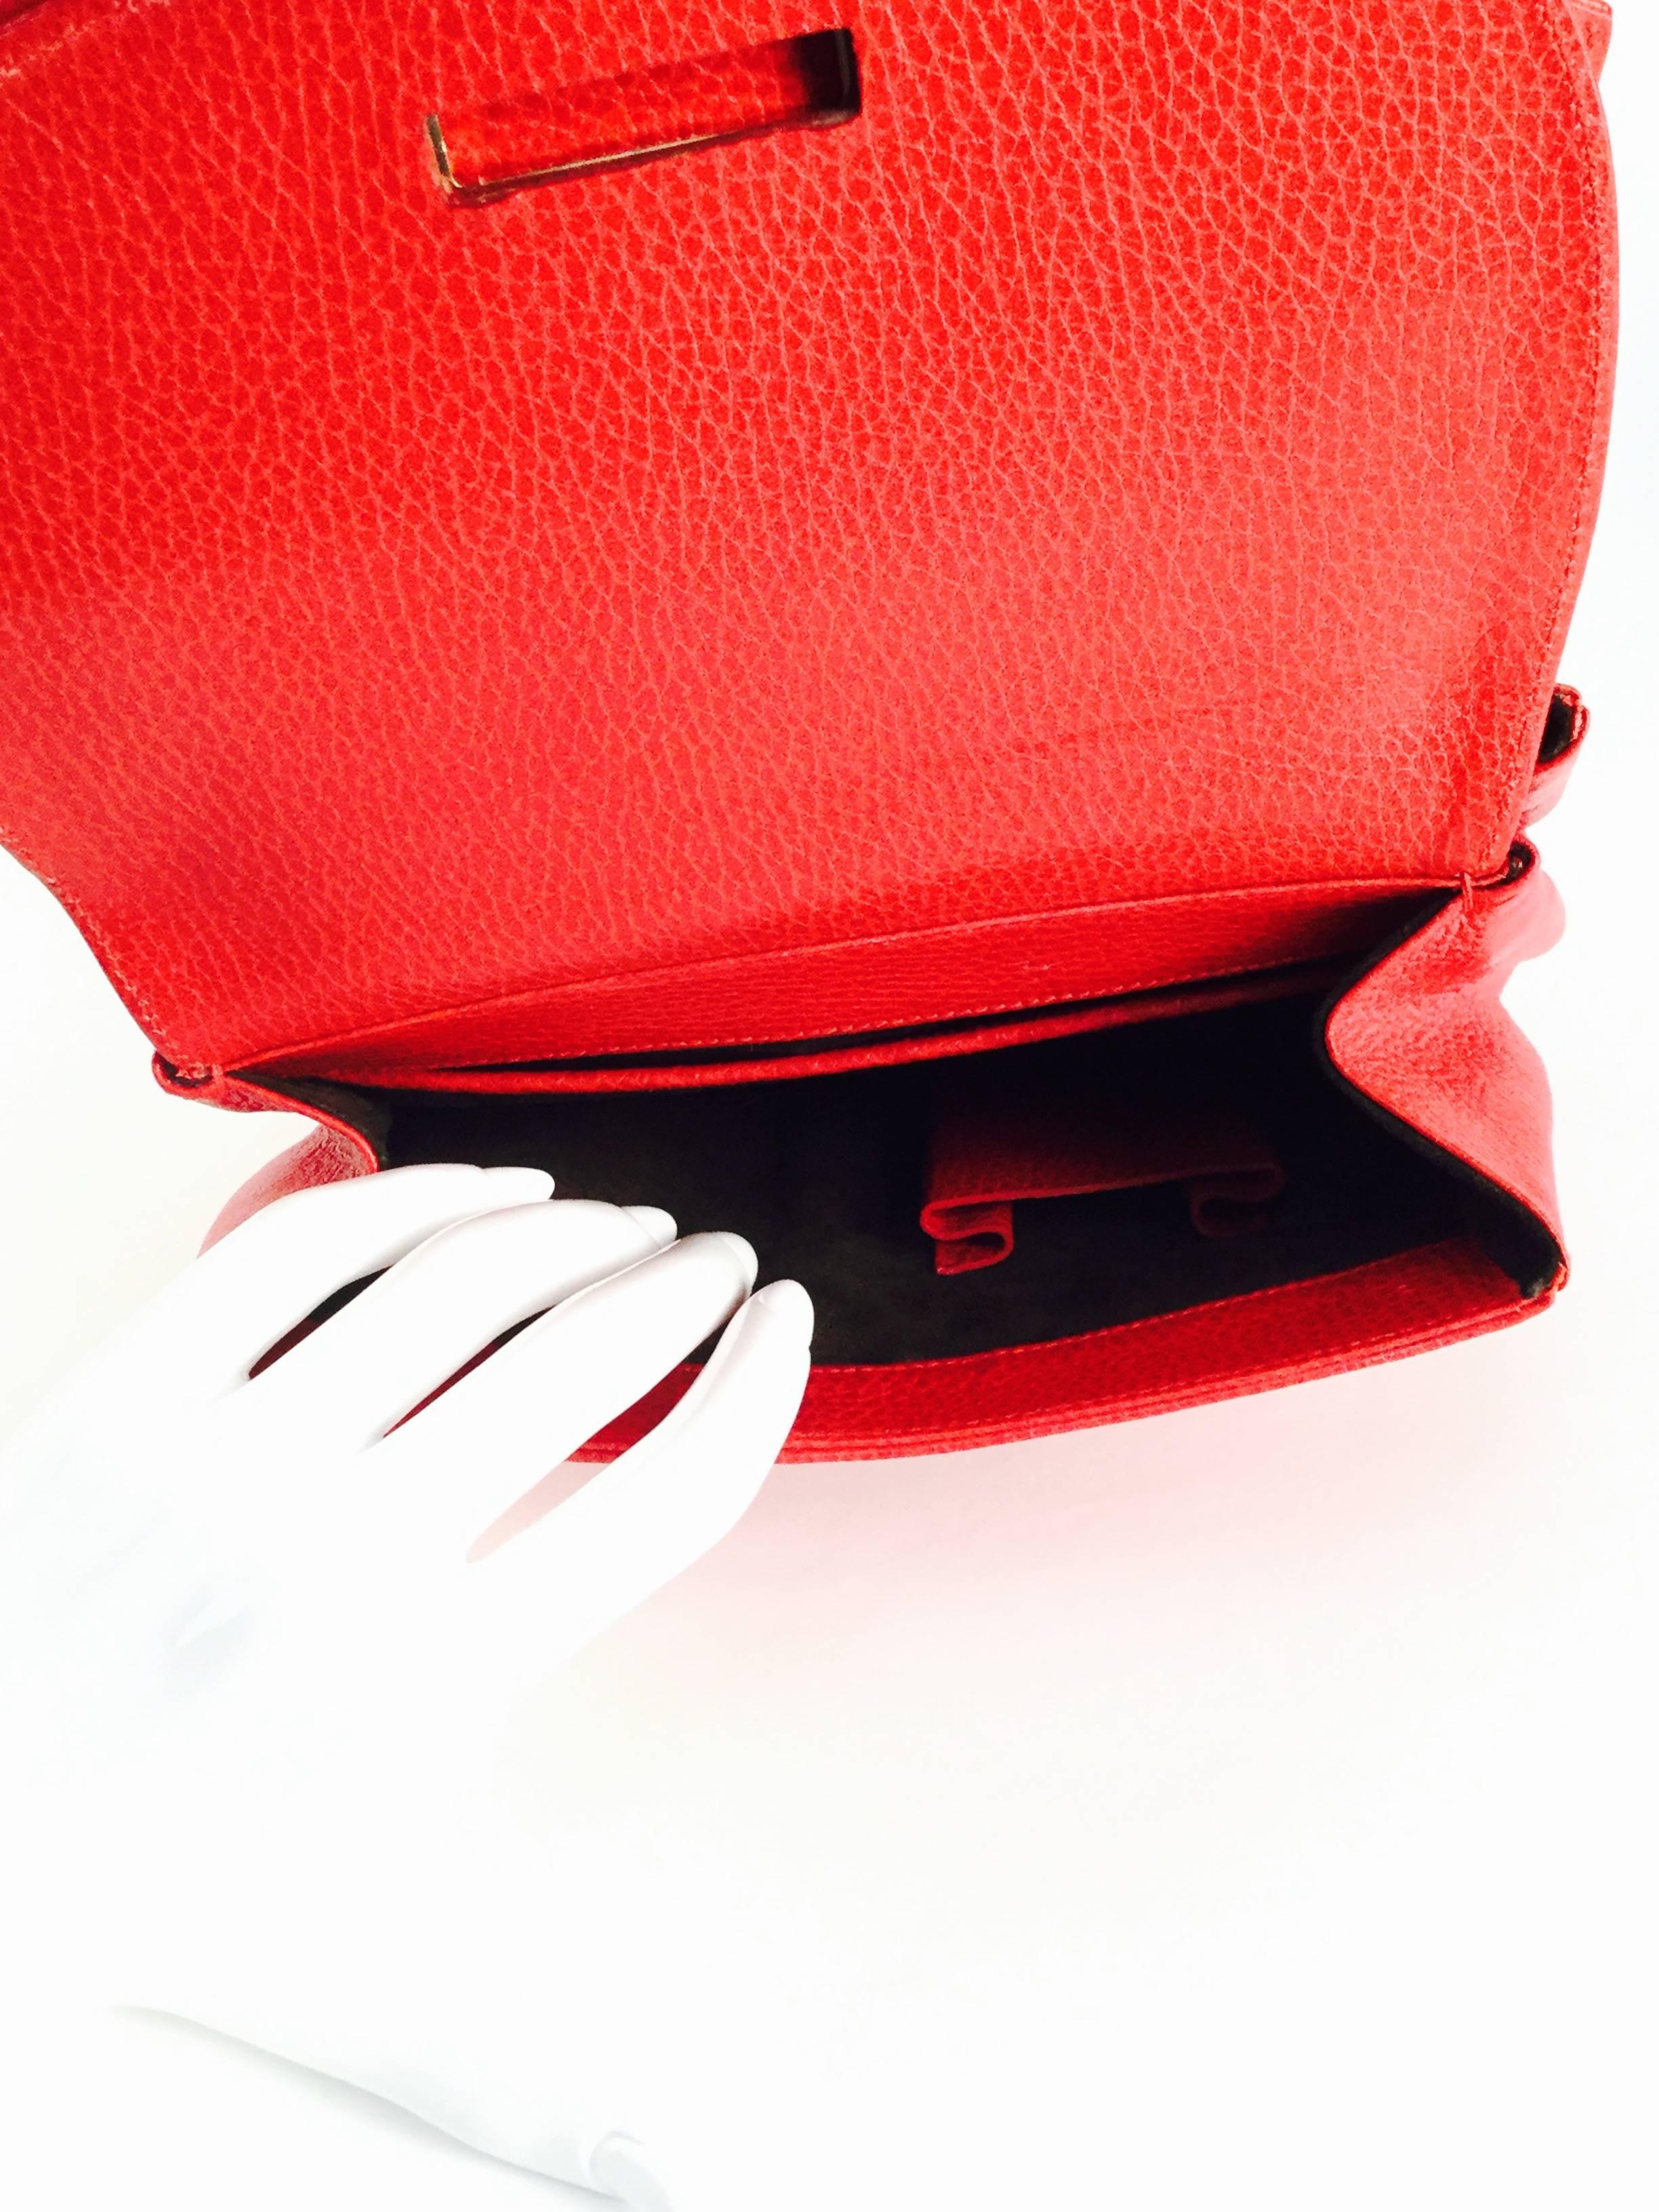 Women's  Vintage Oscar de la Renta Red Leather Top Handle Double Flap Saddle Bag For Sale